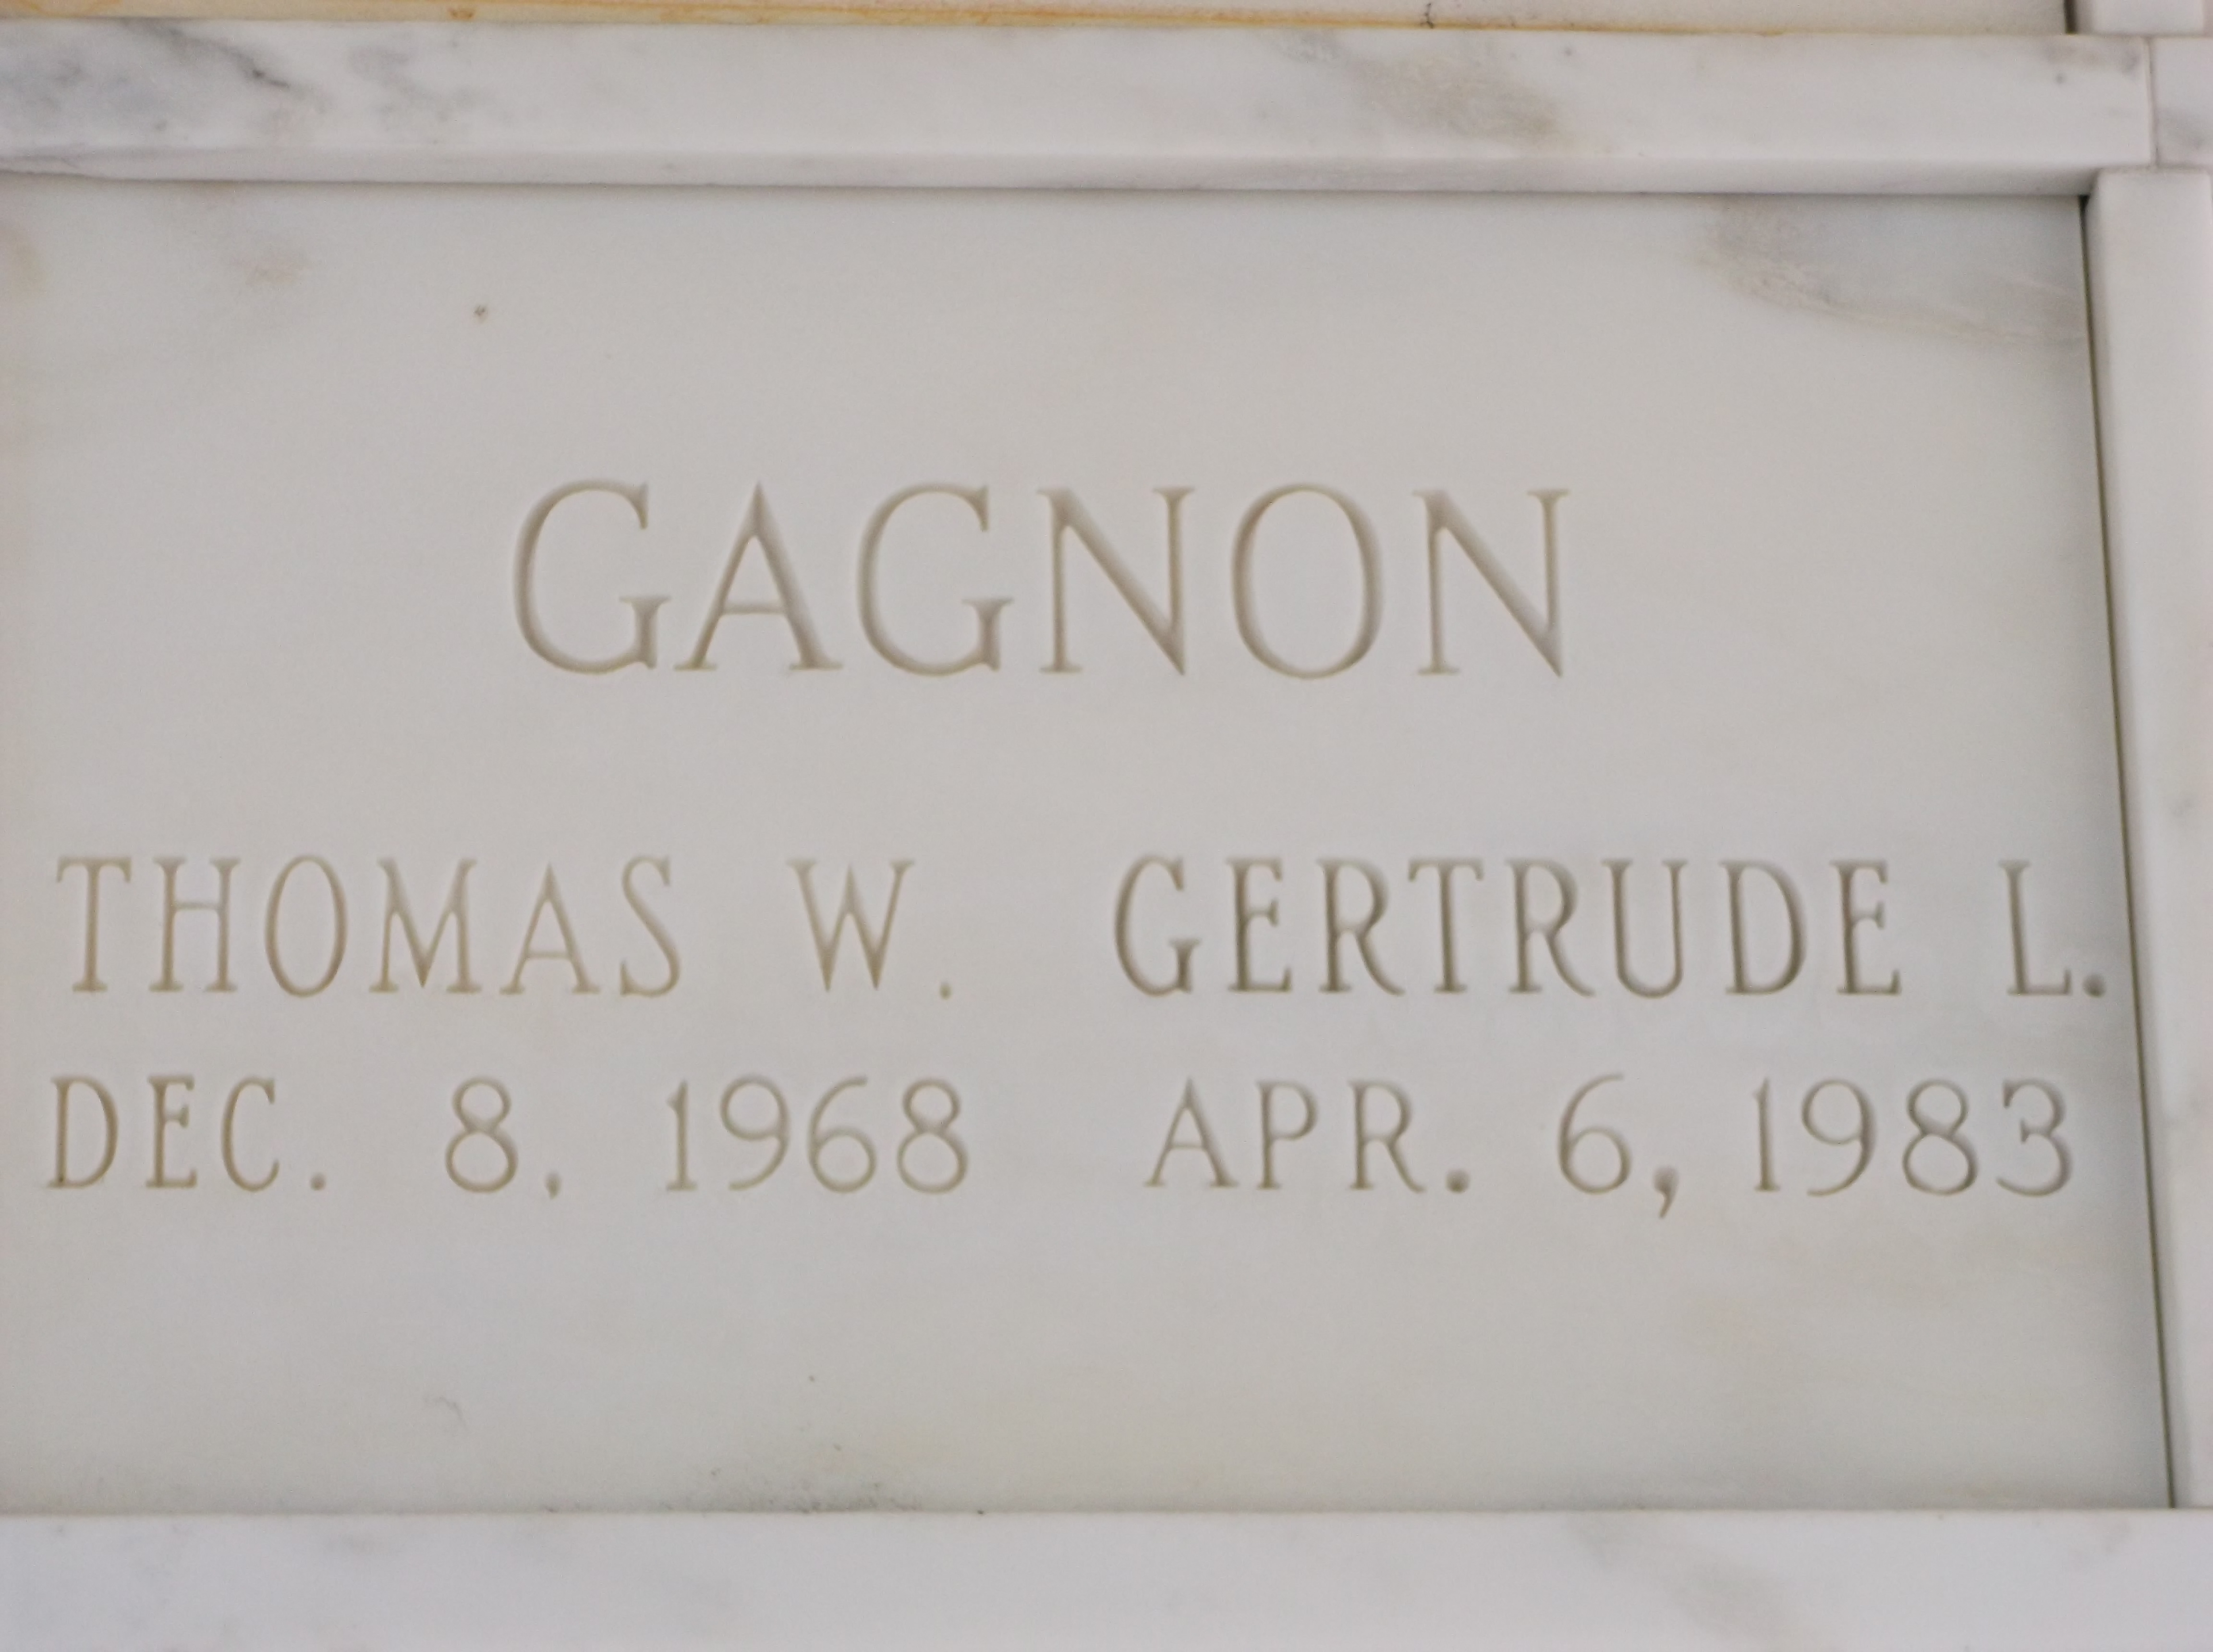 Thomas W Gagnon